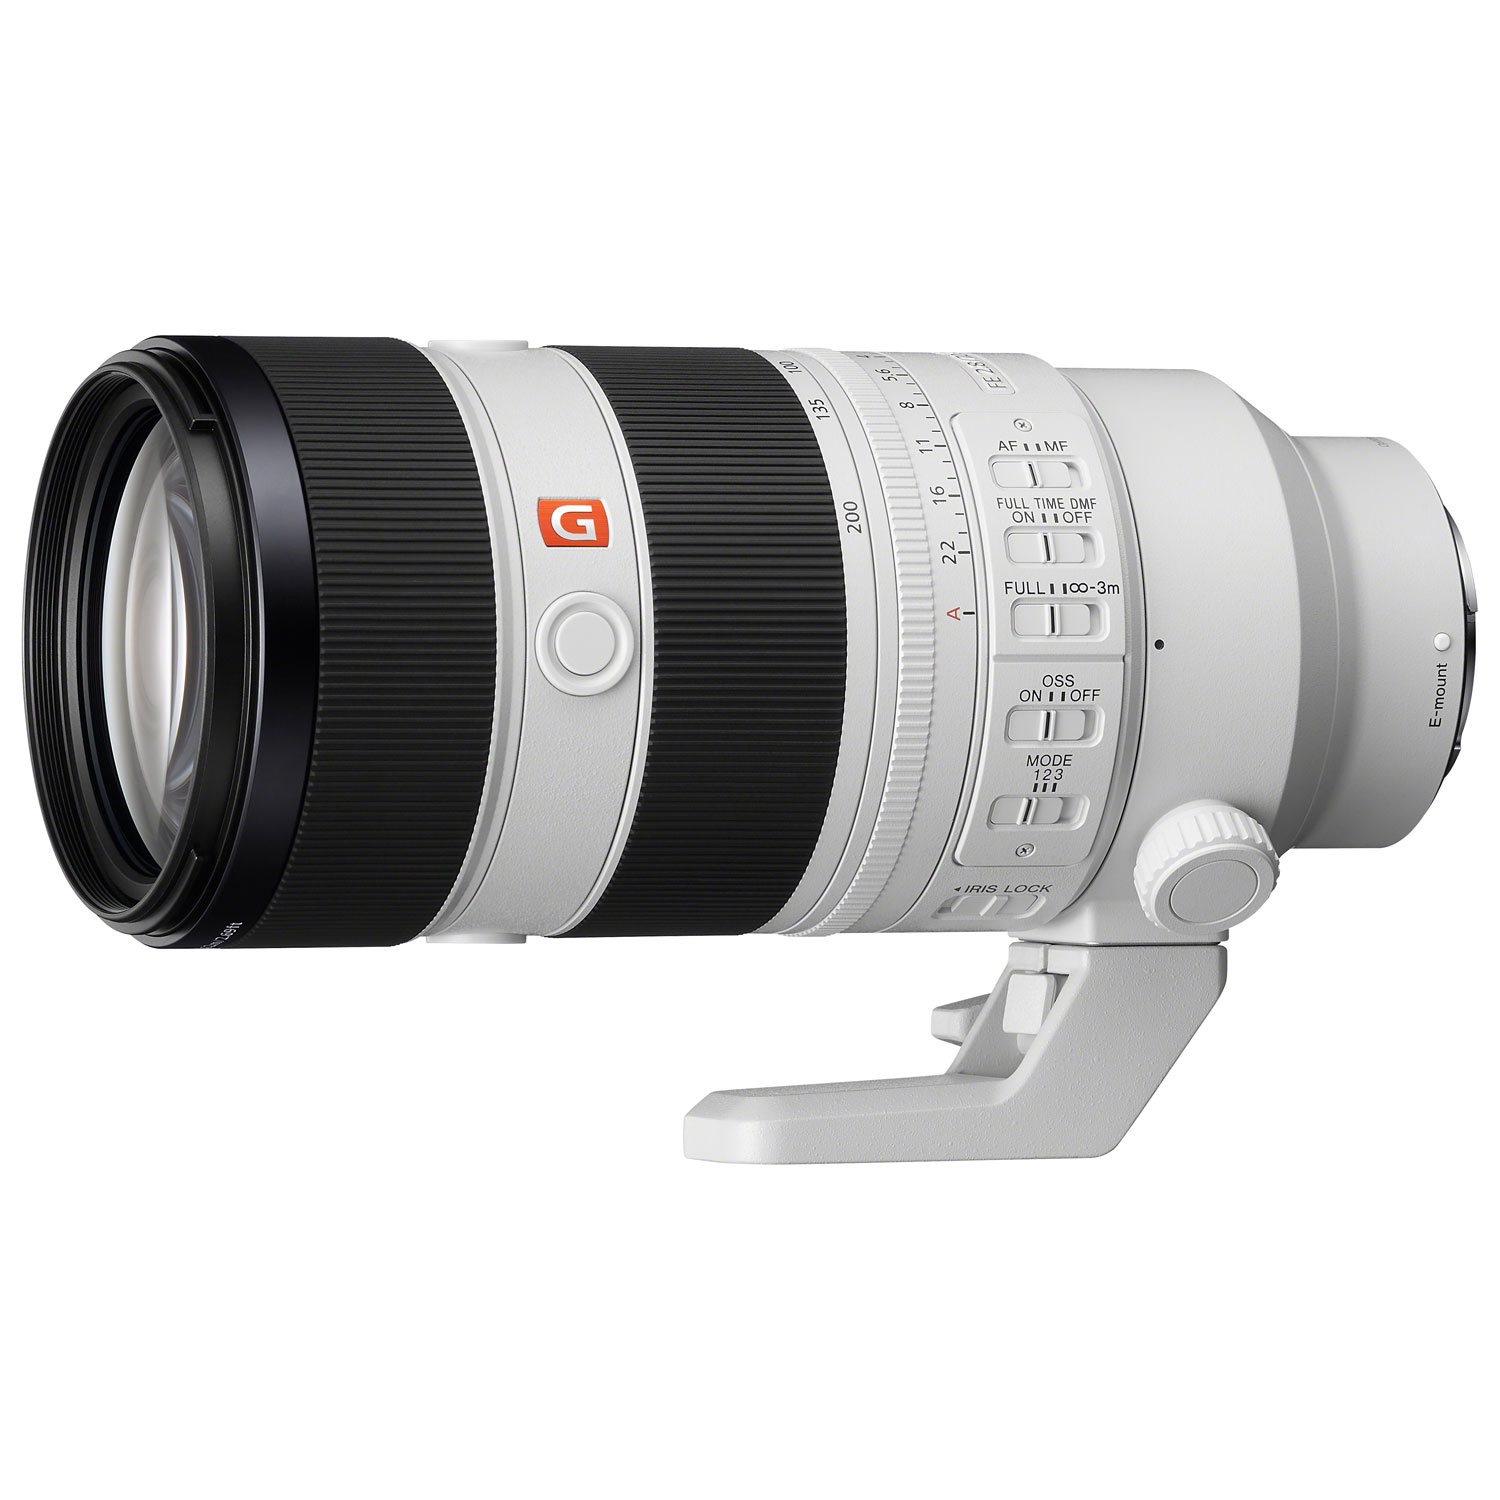 Sony E-Mount Full-Frame FE 70-200mm F2.8 GM OSS II G Master Telephoto Zoom Lens